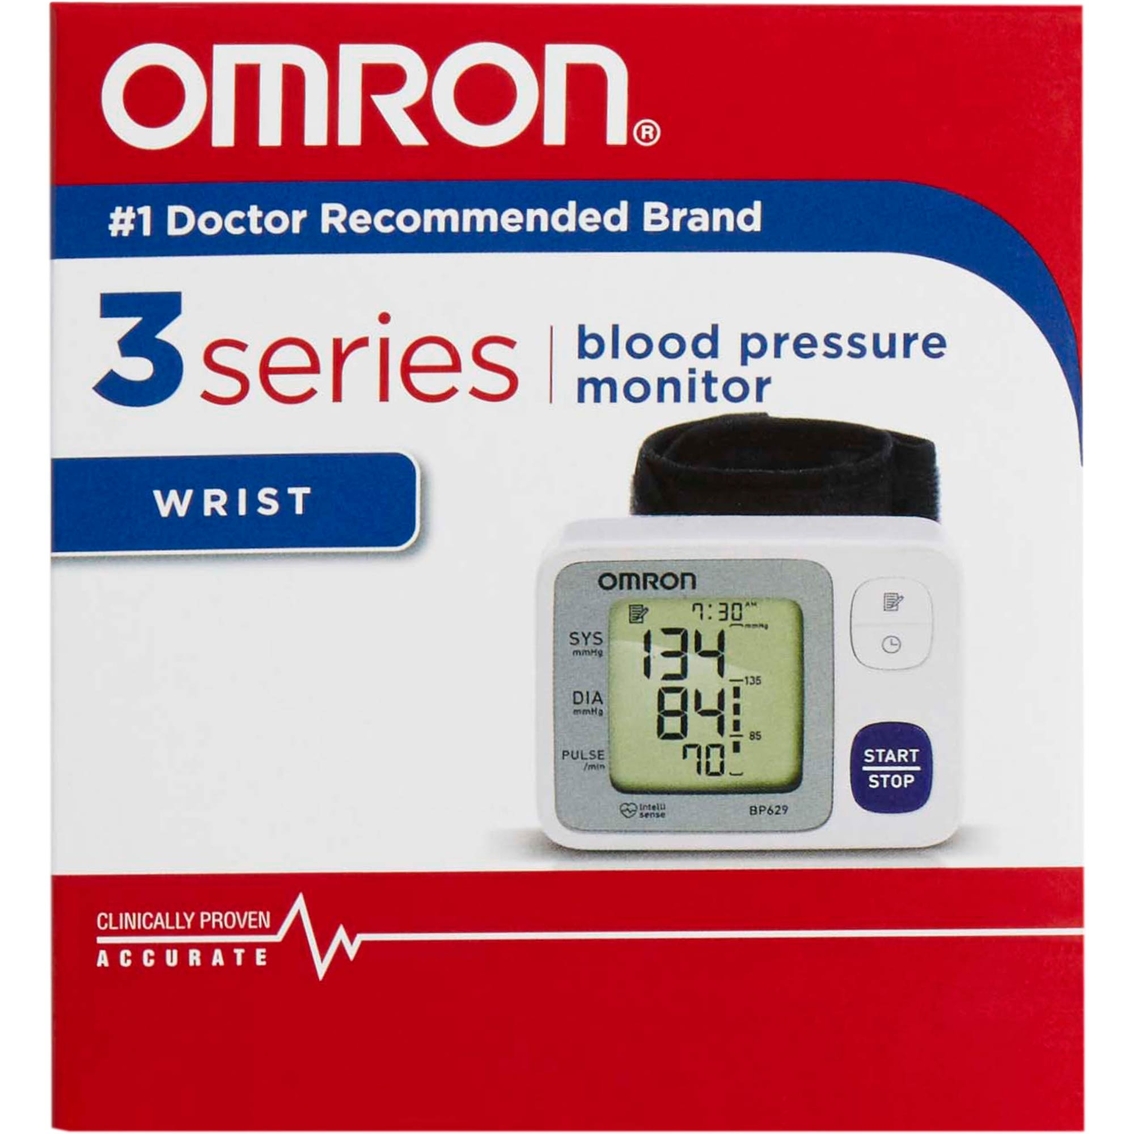 Omron 3 Series Wrist Blood Pressure Monitor, BP629N - Image 2 of 2